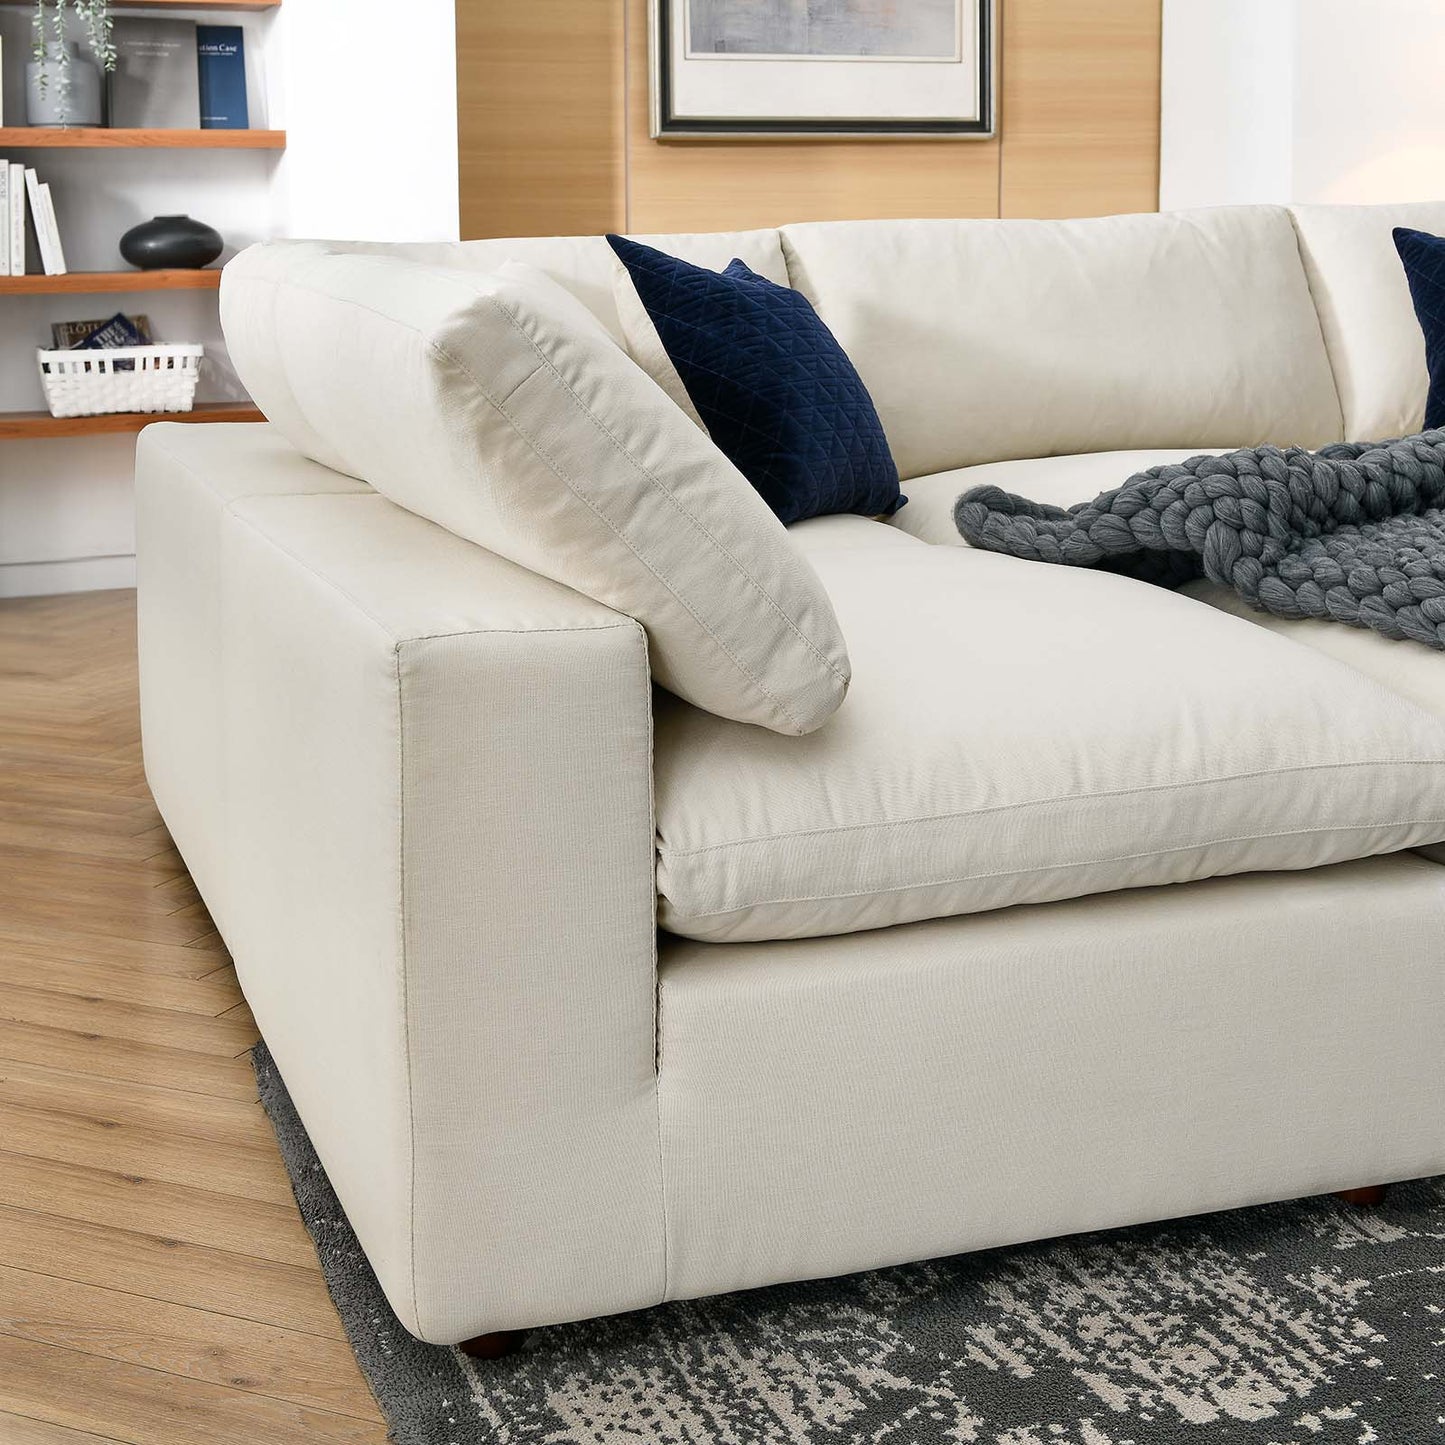 Commix Down Filled Overstuffed 6-Piece Sectional Sofa Light Beige EEI-5761-LBG